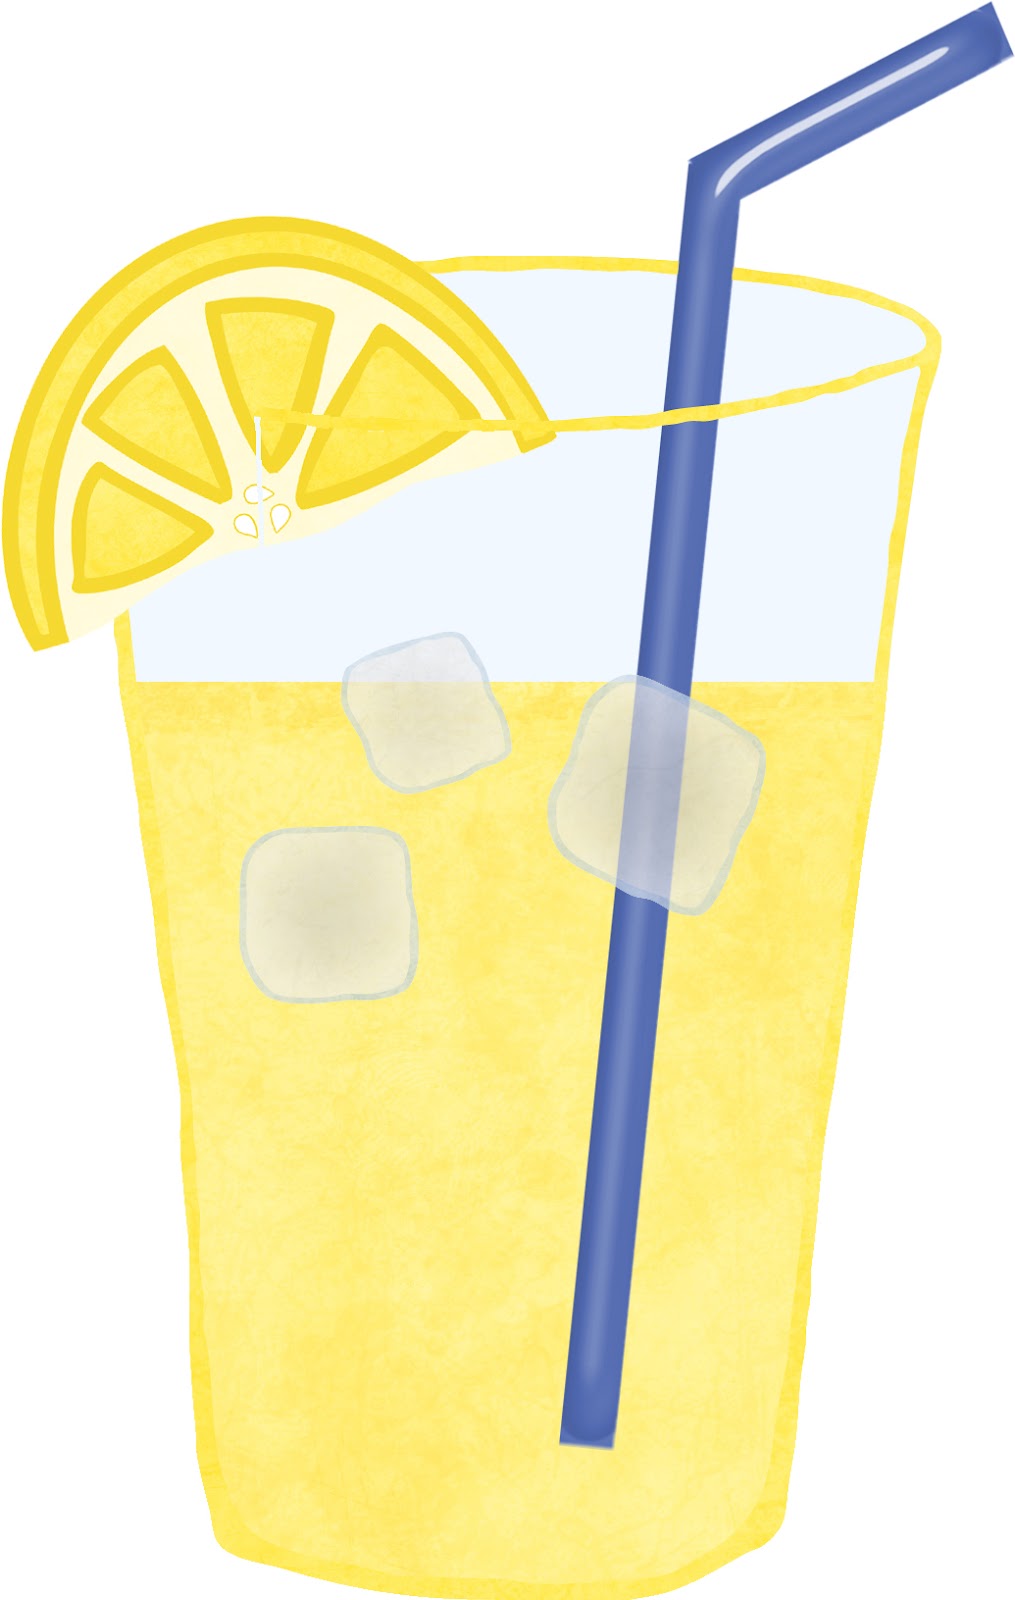 clipart lemonade pitcher - photo #24